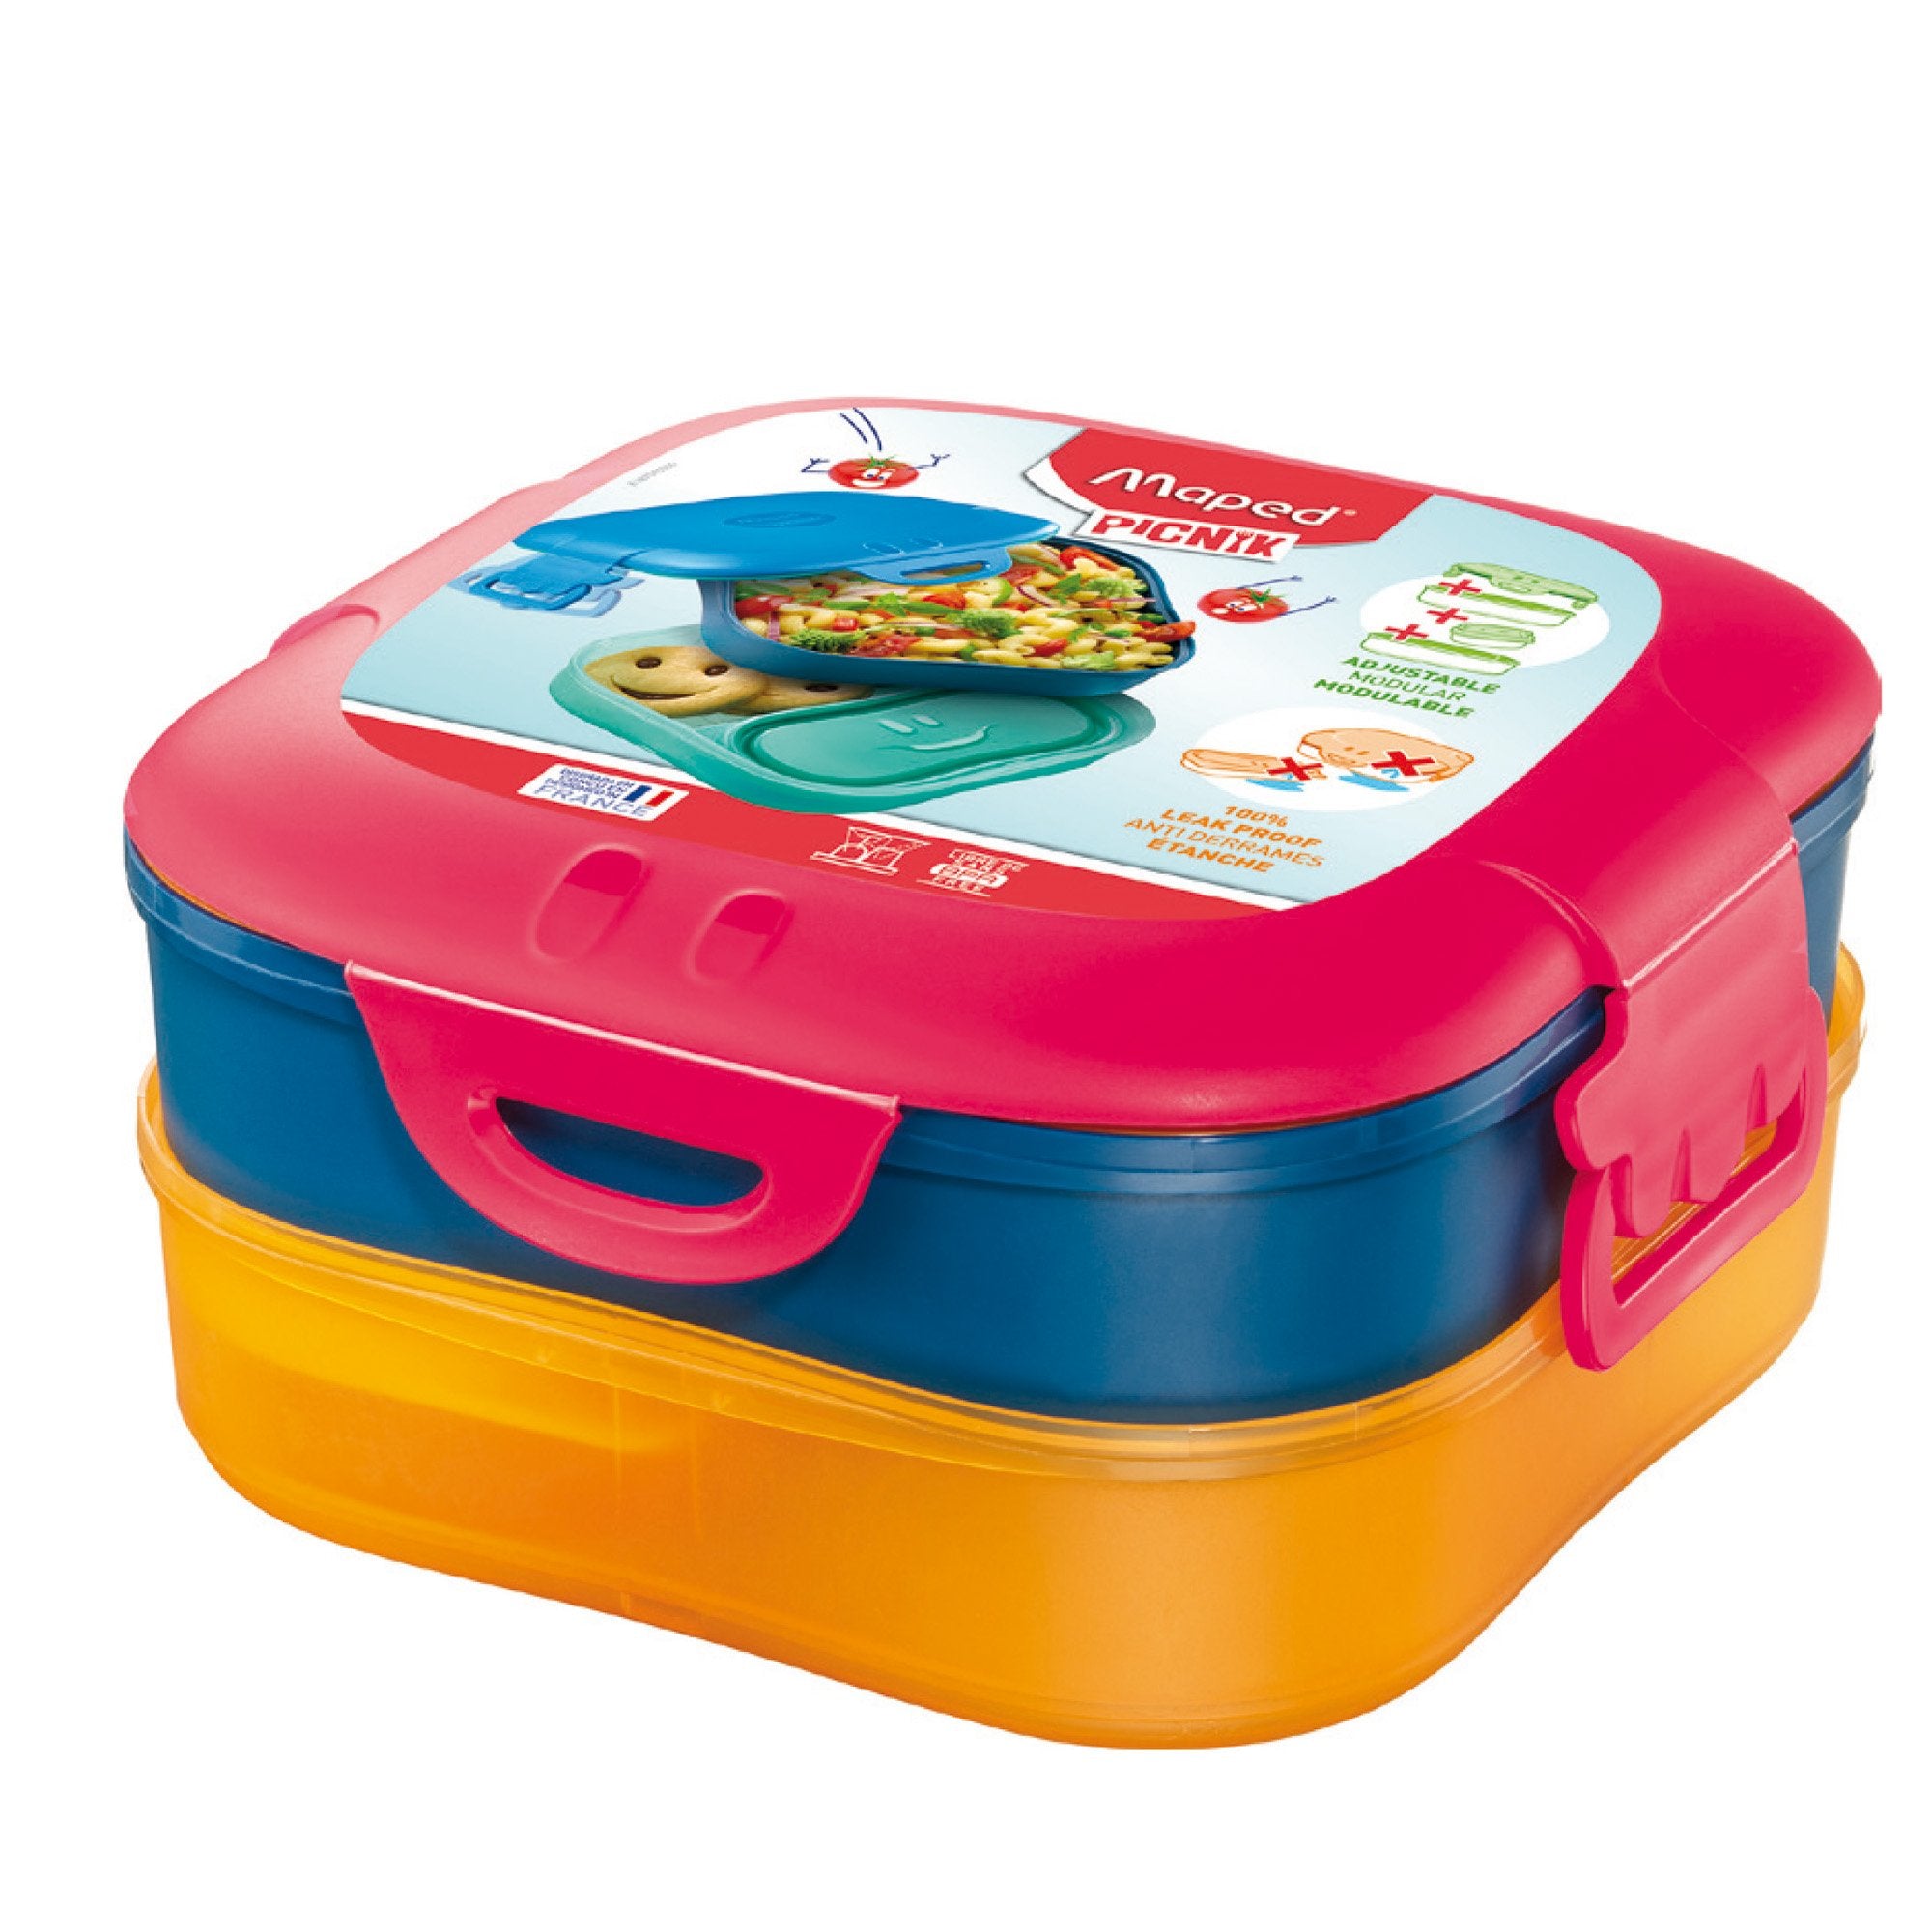 maped-lunch-box-3-1-rosa-corallo-picnik-concept